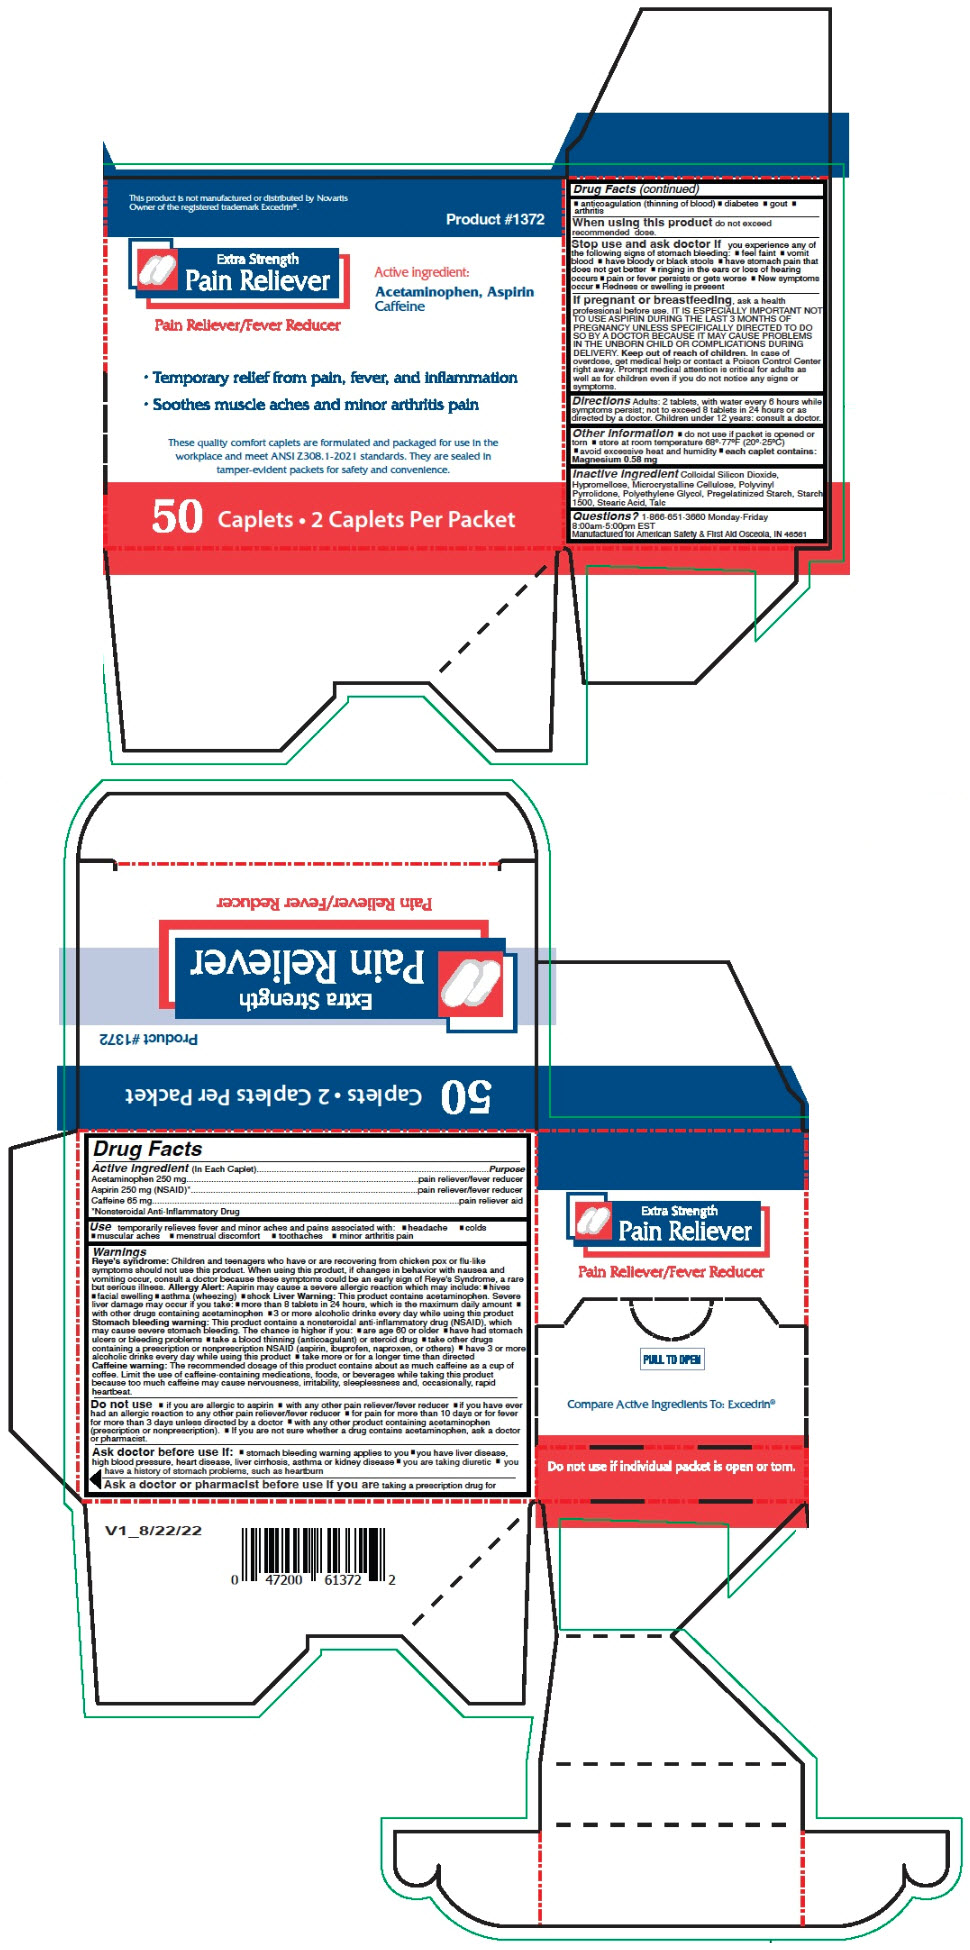 PRINCIPAL DISPLAY PANEL - 50 Caplet Packet Box